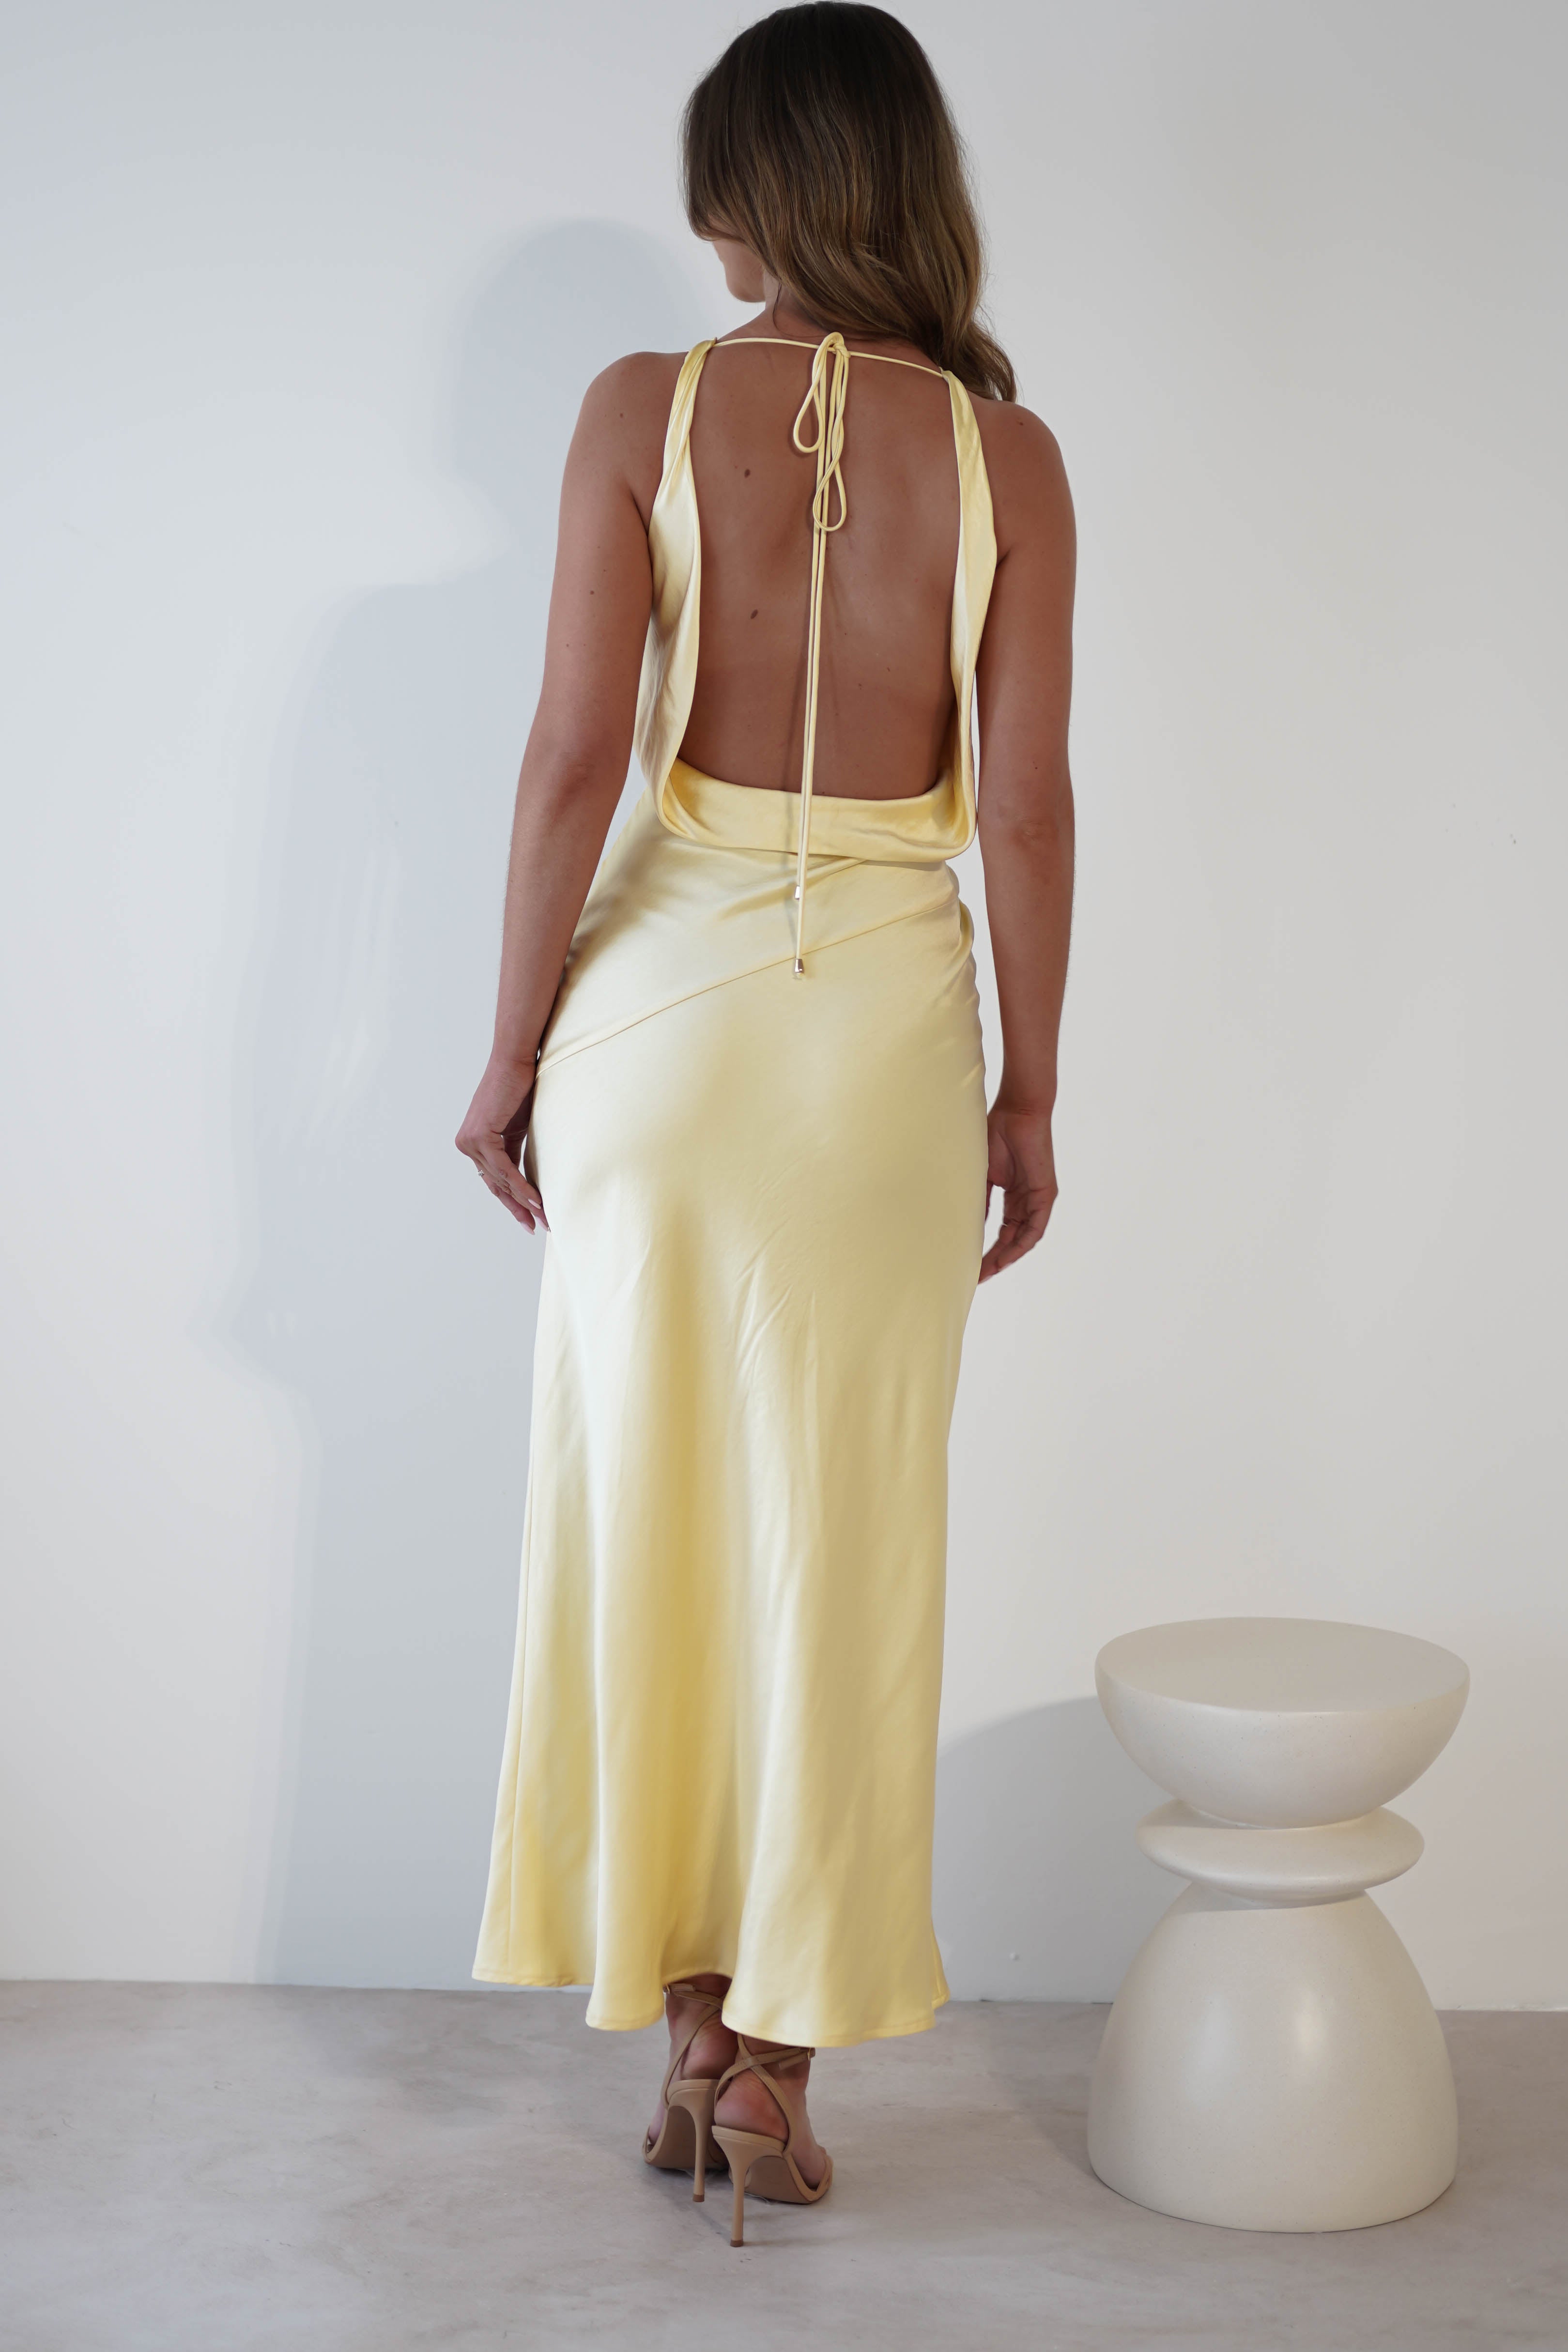 Leah Cowl Neckline Maxi Dress | Lemon